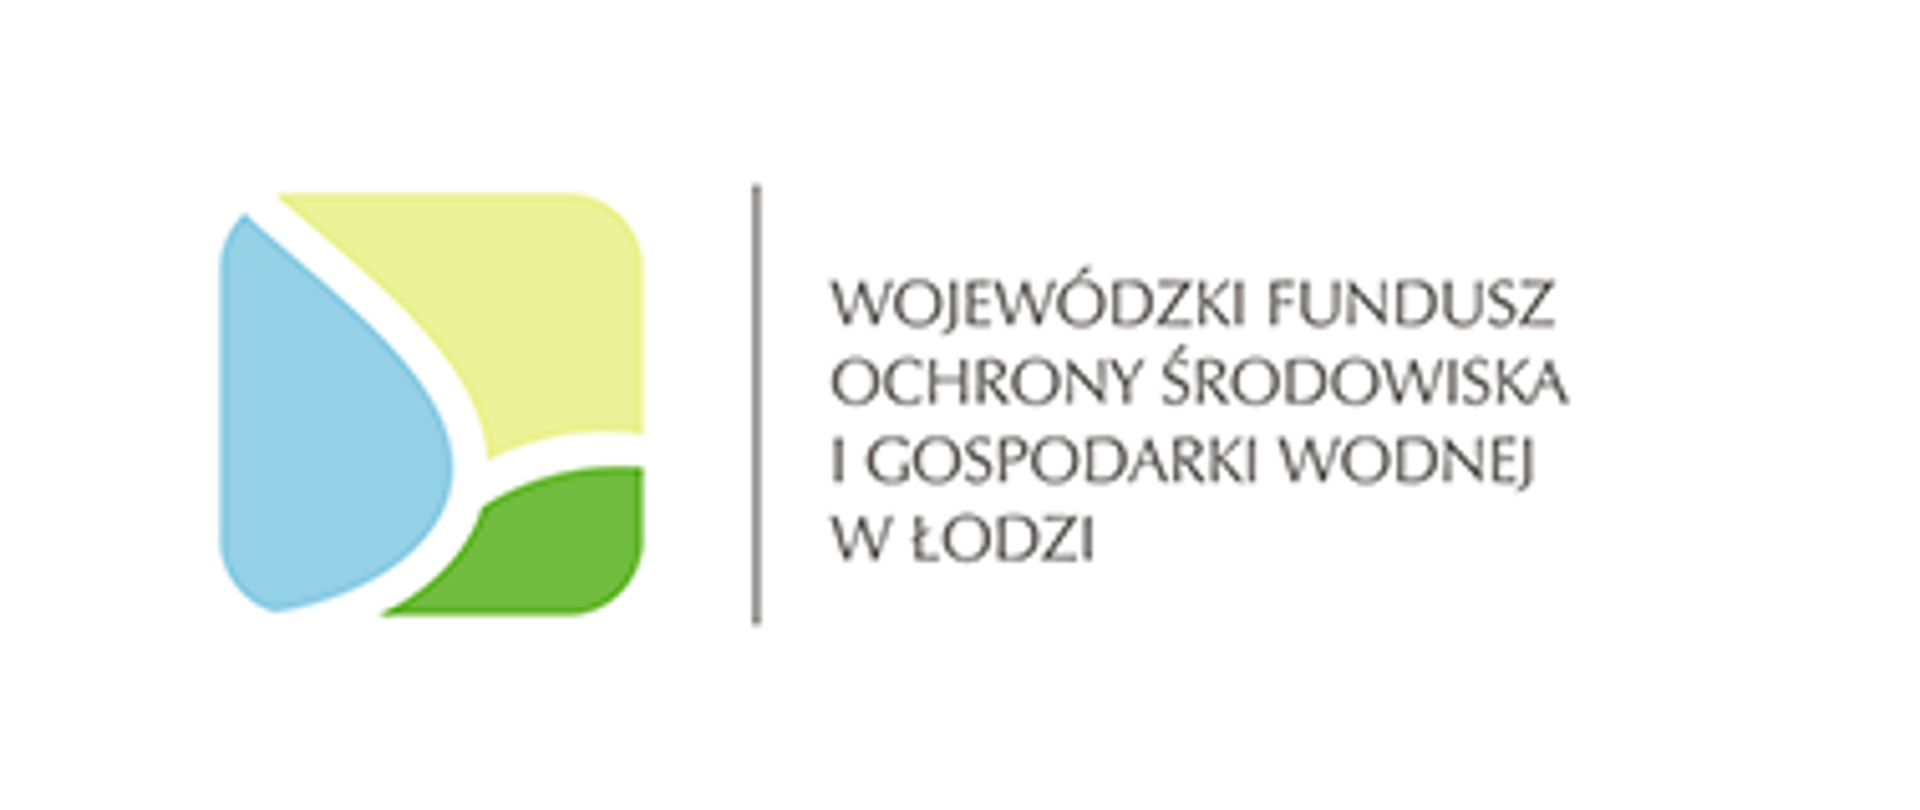 Grafika Wojewódzkiego funduszu ochrony środowiska i gospodarki wodnej w Łodzi.